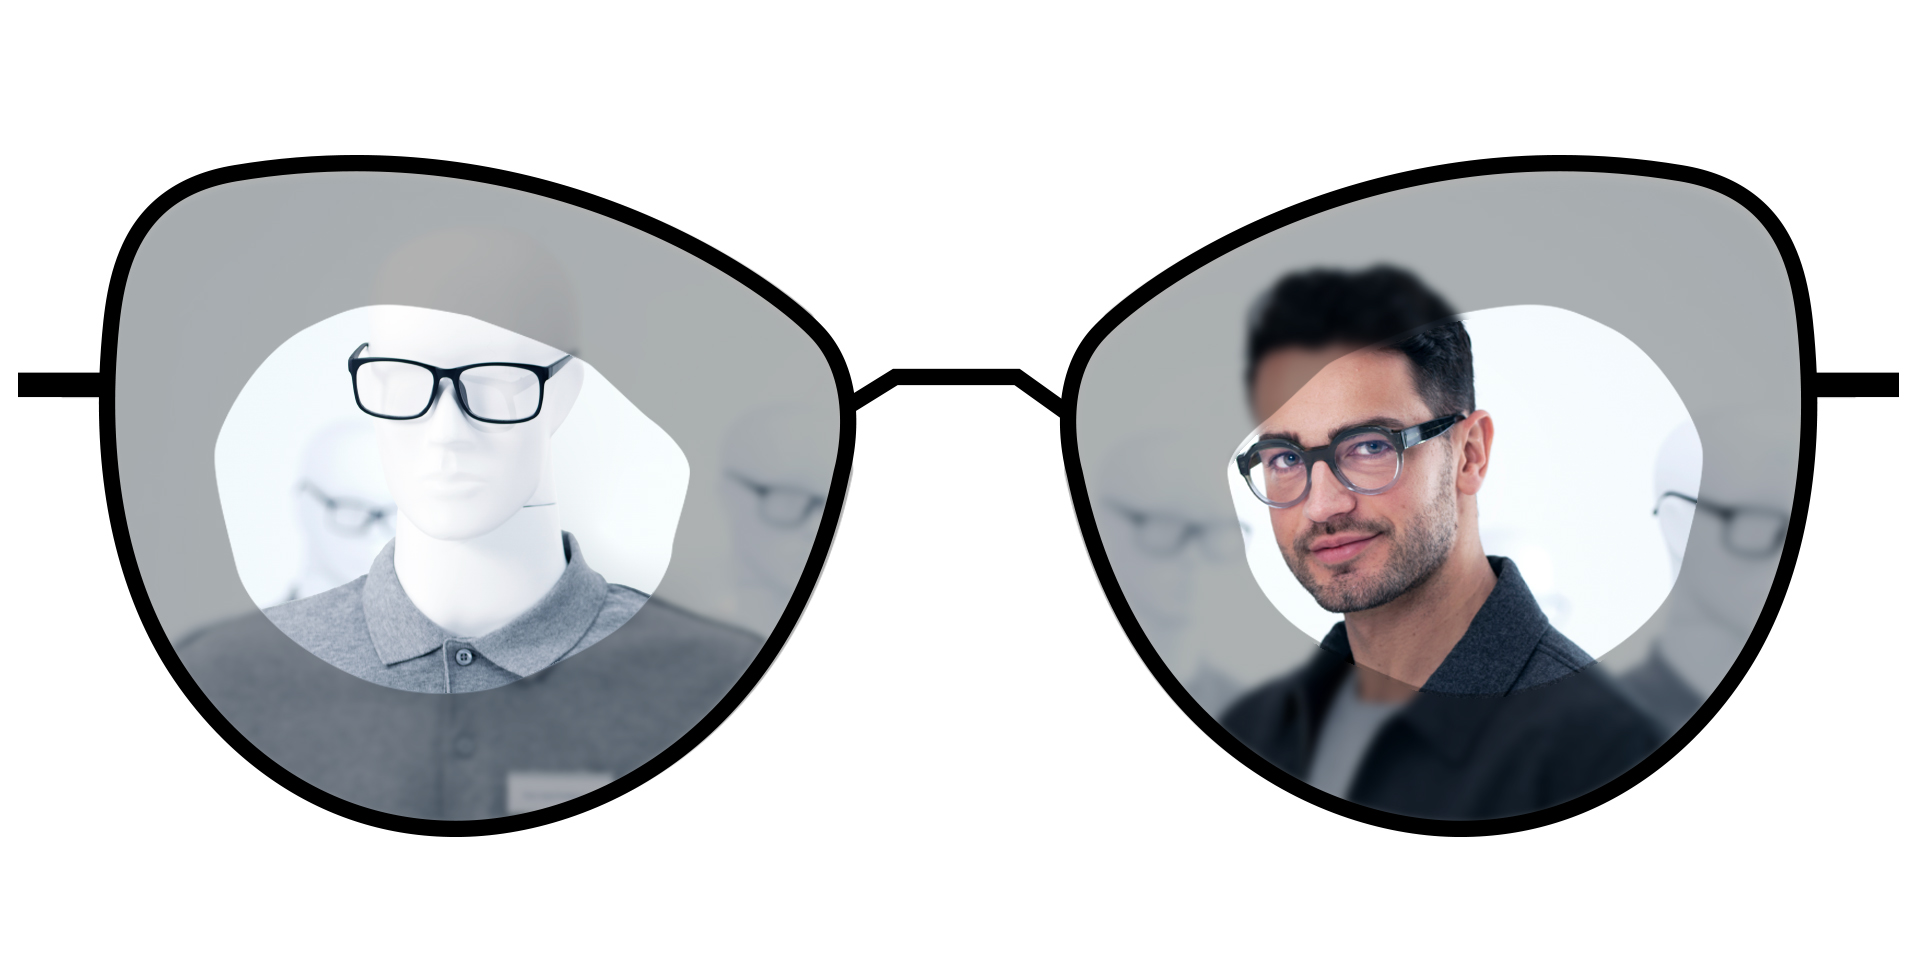 此眼镜插图展现了蔡司普通单光镜片的模糊区域，并 蔡司泽锐单光镜片的大范围清晰视野区域进行了比较。